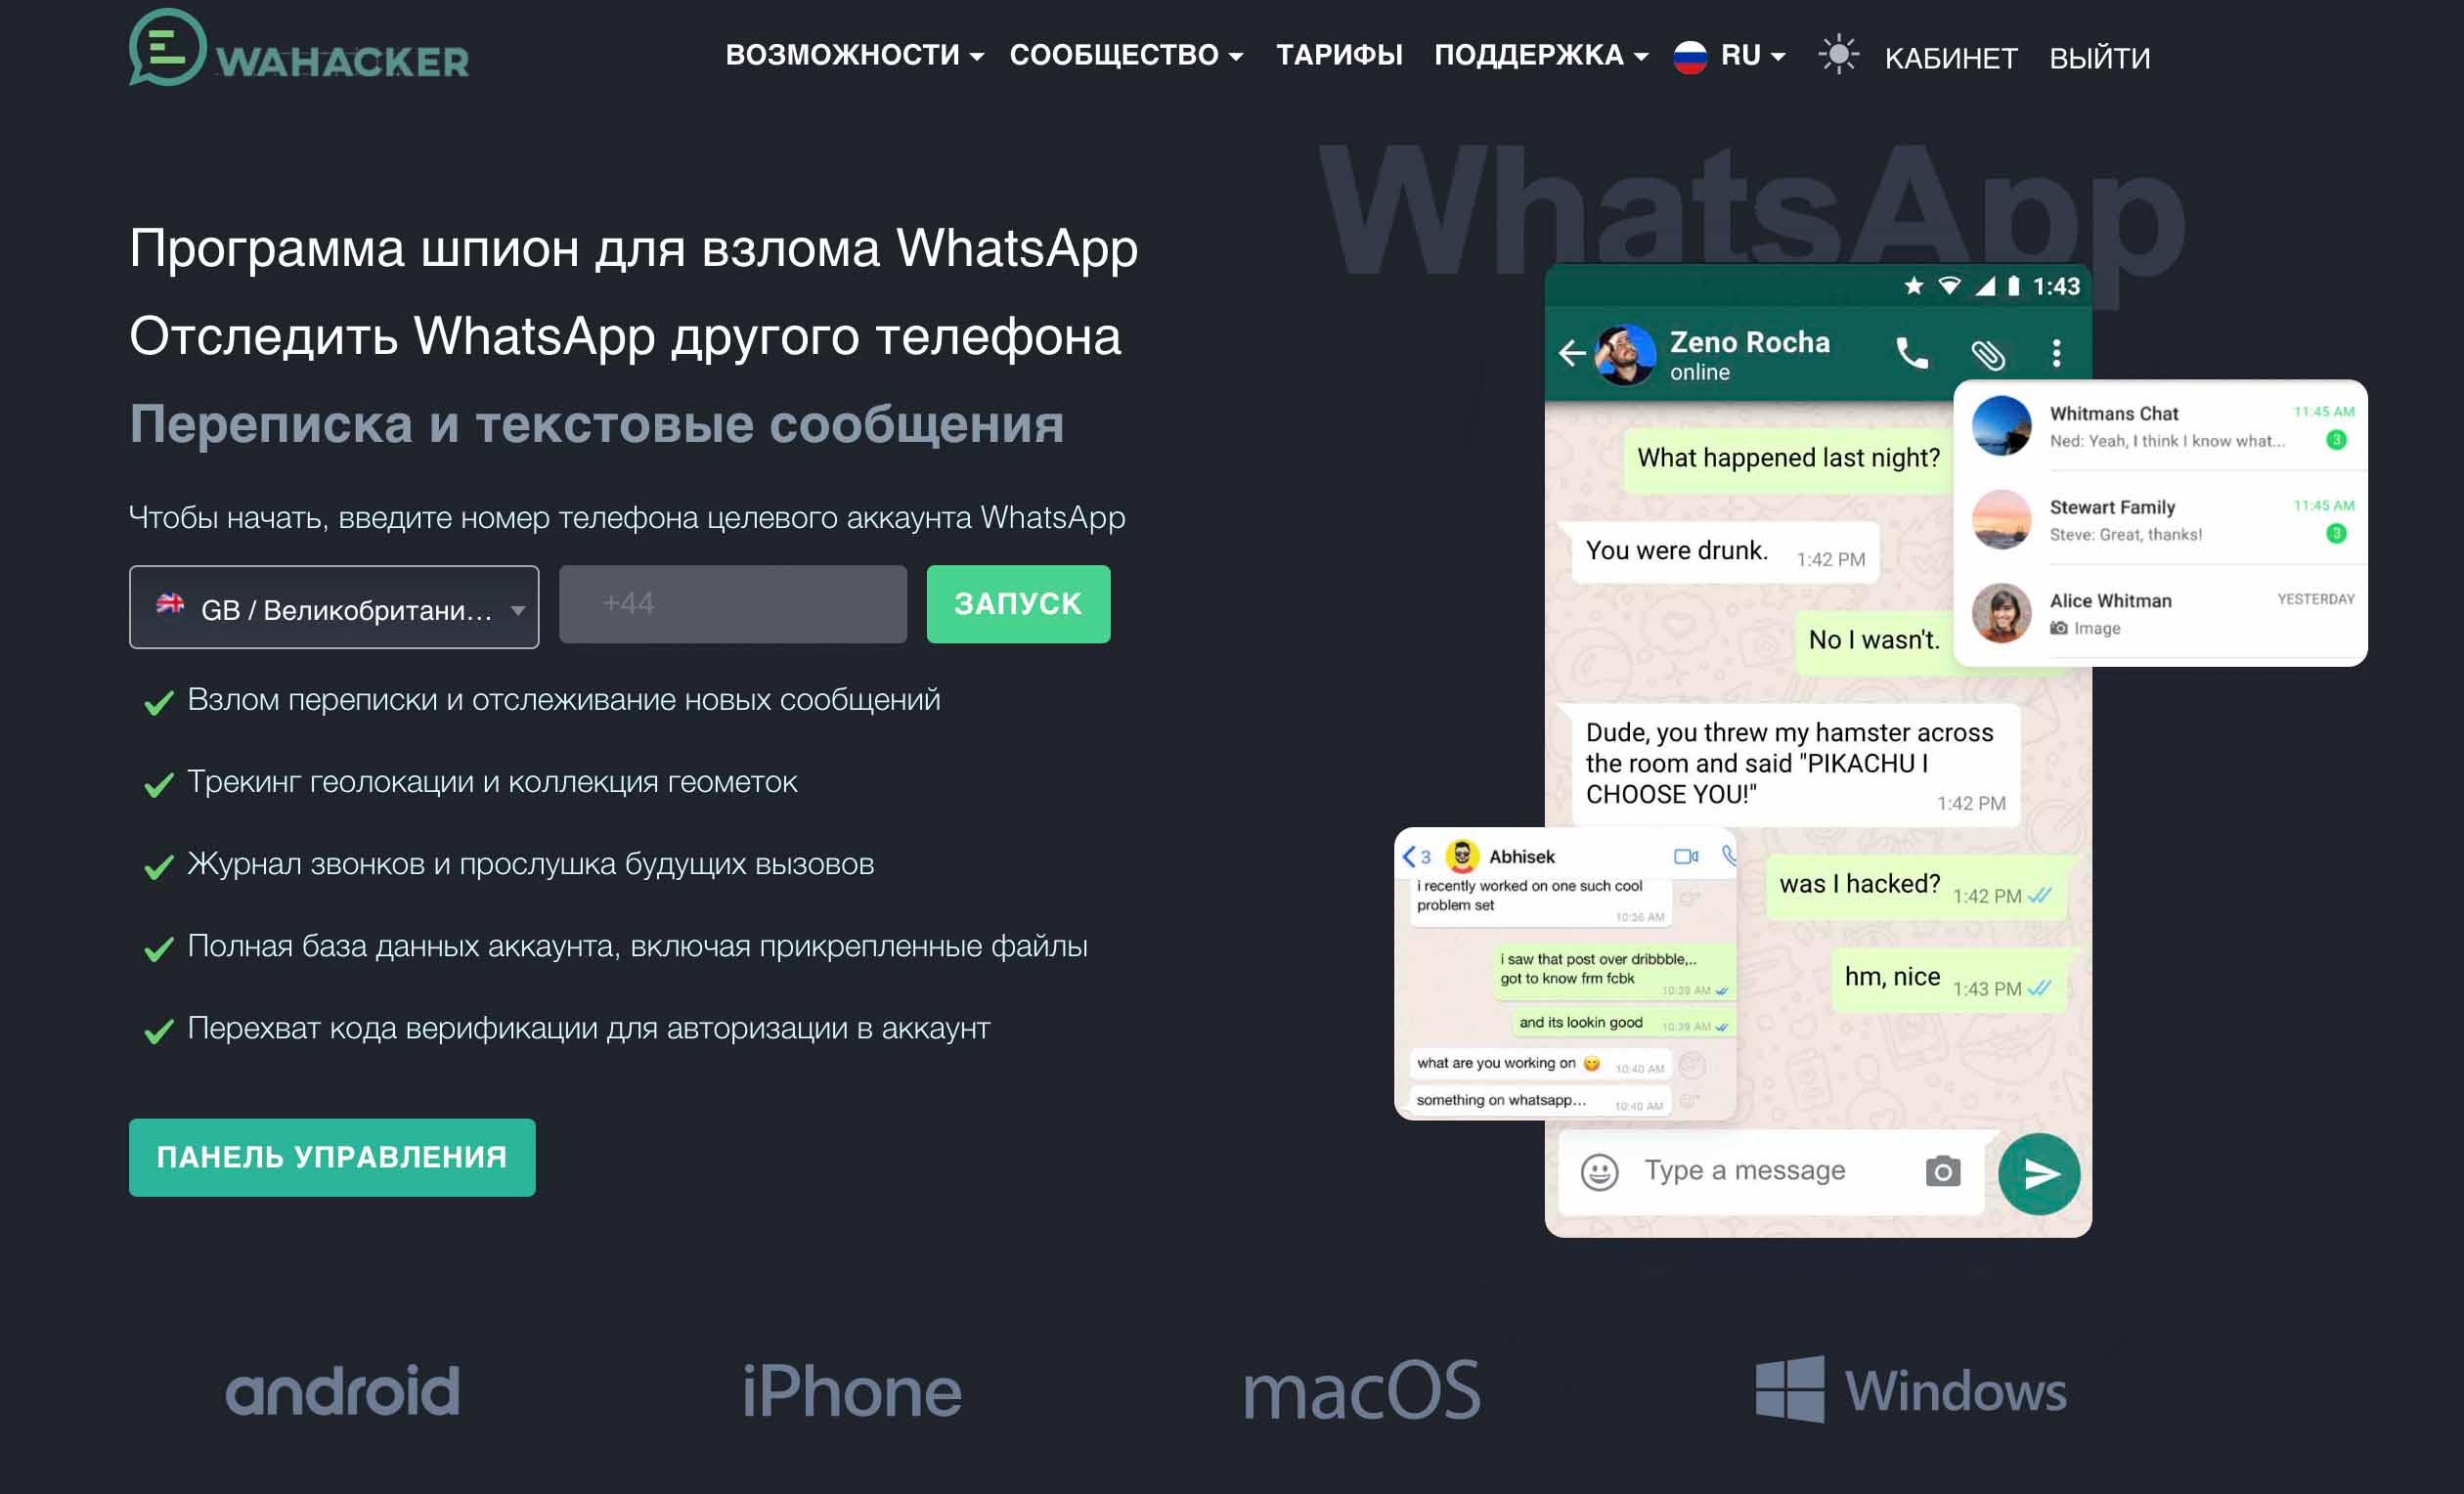 启动 WaHacker，阅读 WhatsApp 中其他人的信息！